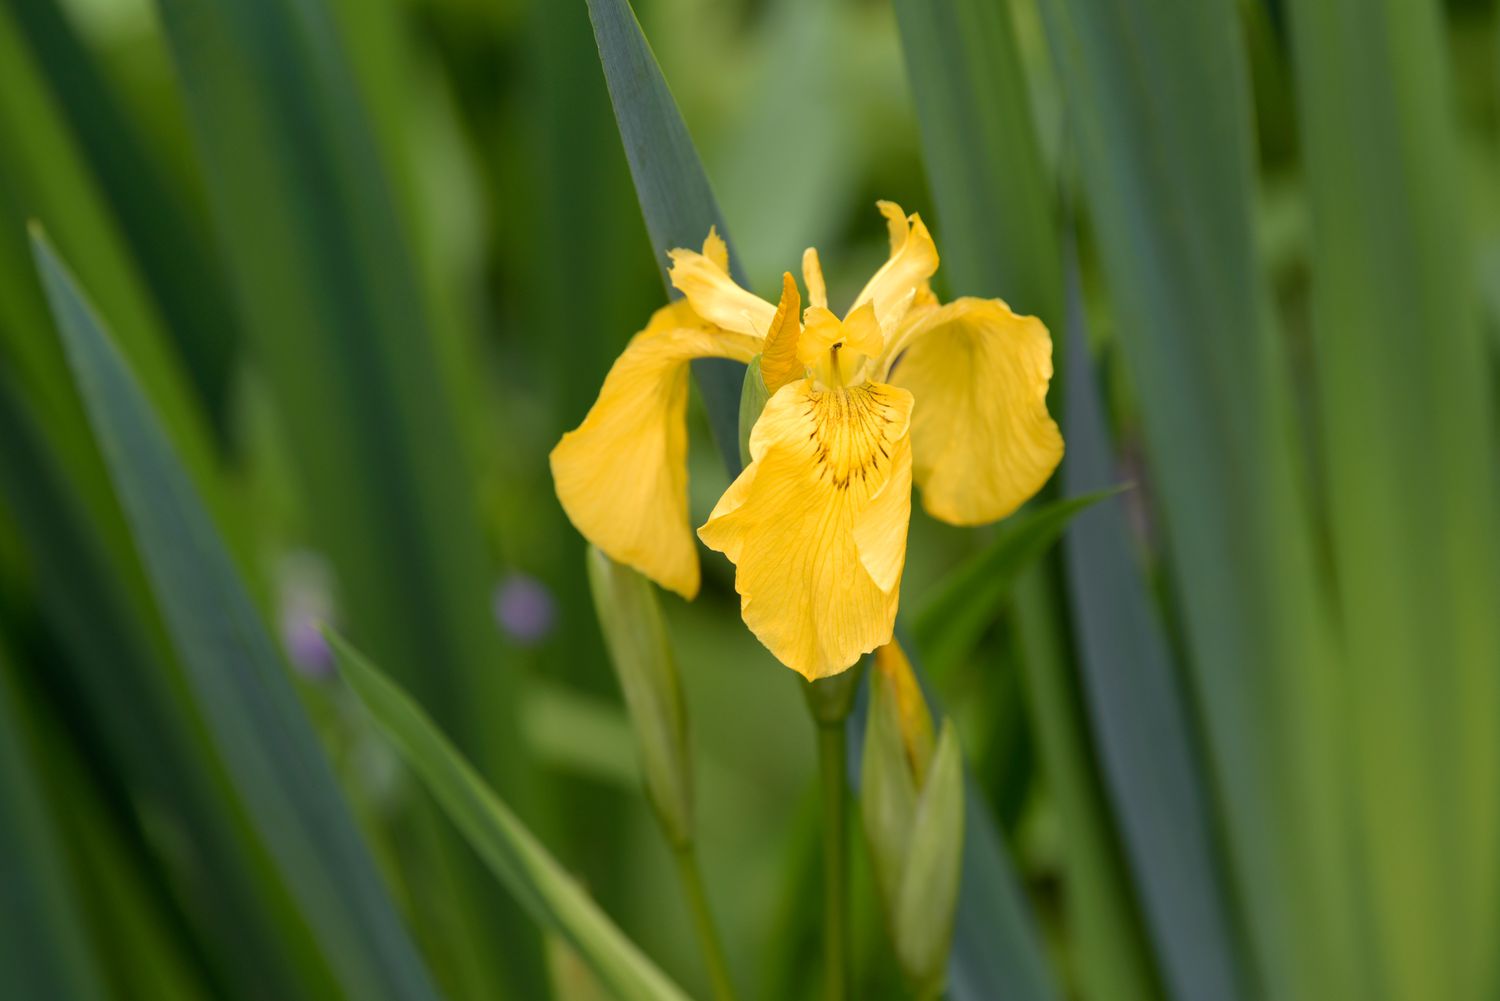 Flor de íris bandeira amarela com pétalas amarelas e enroladas cercadas por folhas longas